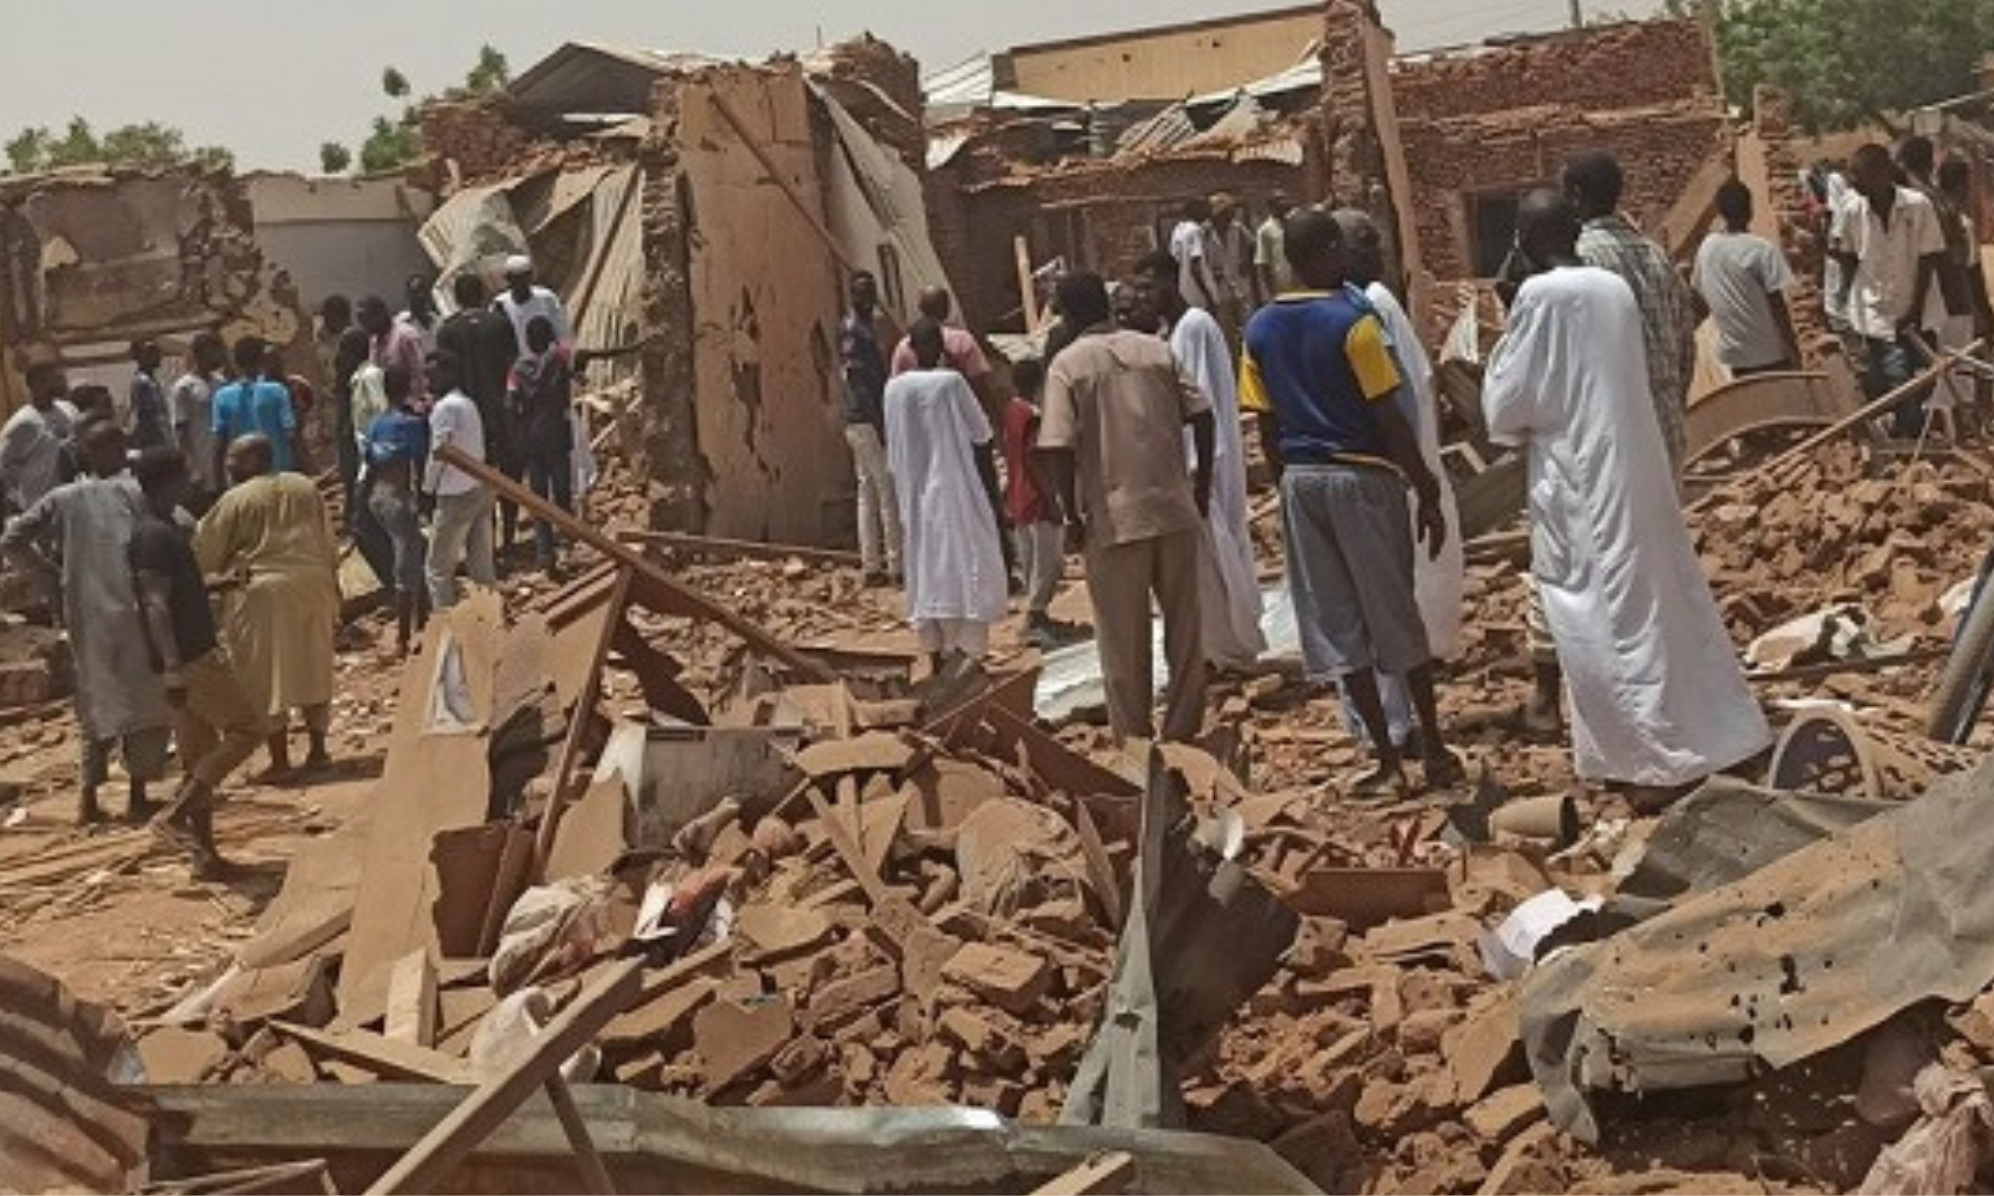 السودان: معارك شرسة في أم درمان تشل حياة المدينة الهادئة نسبياً